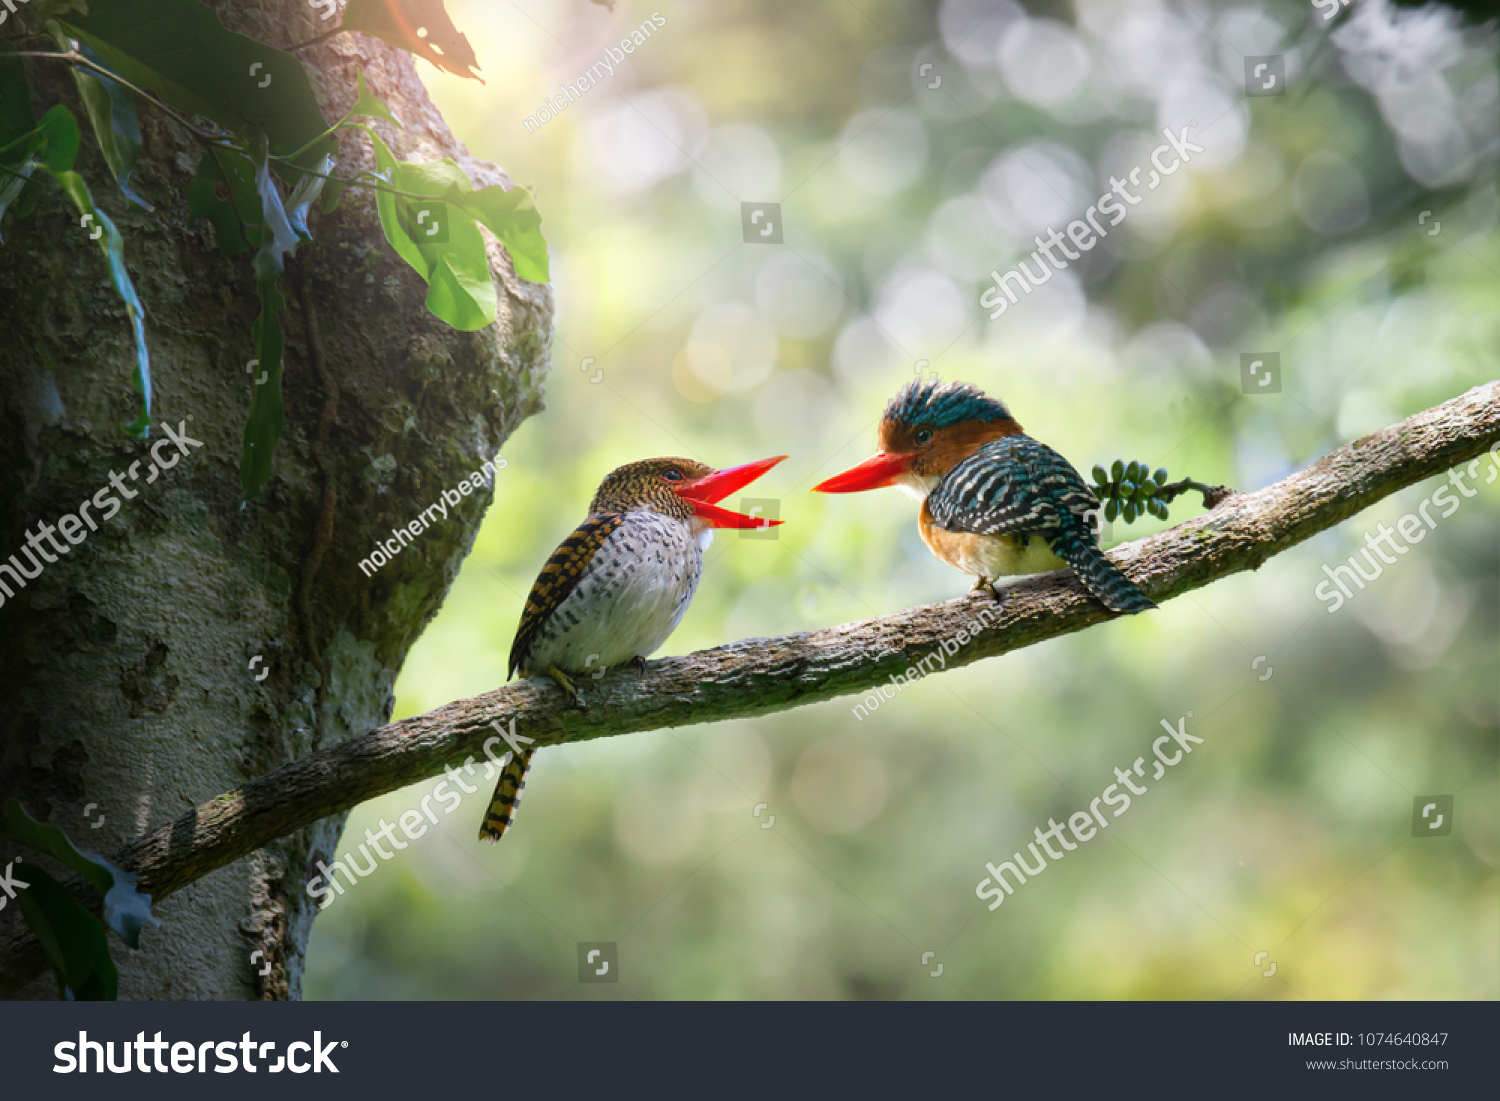 ボケの森の背景に 歌を歌い 顔を見合わせた美しいバンディング キングフィッシャー 鳥が恋に落ちる の写真素材 今すぐ編集 1074640847